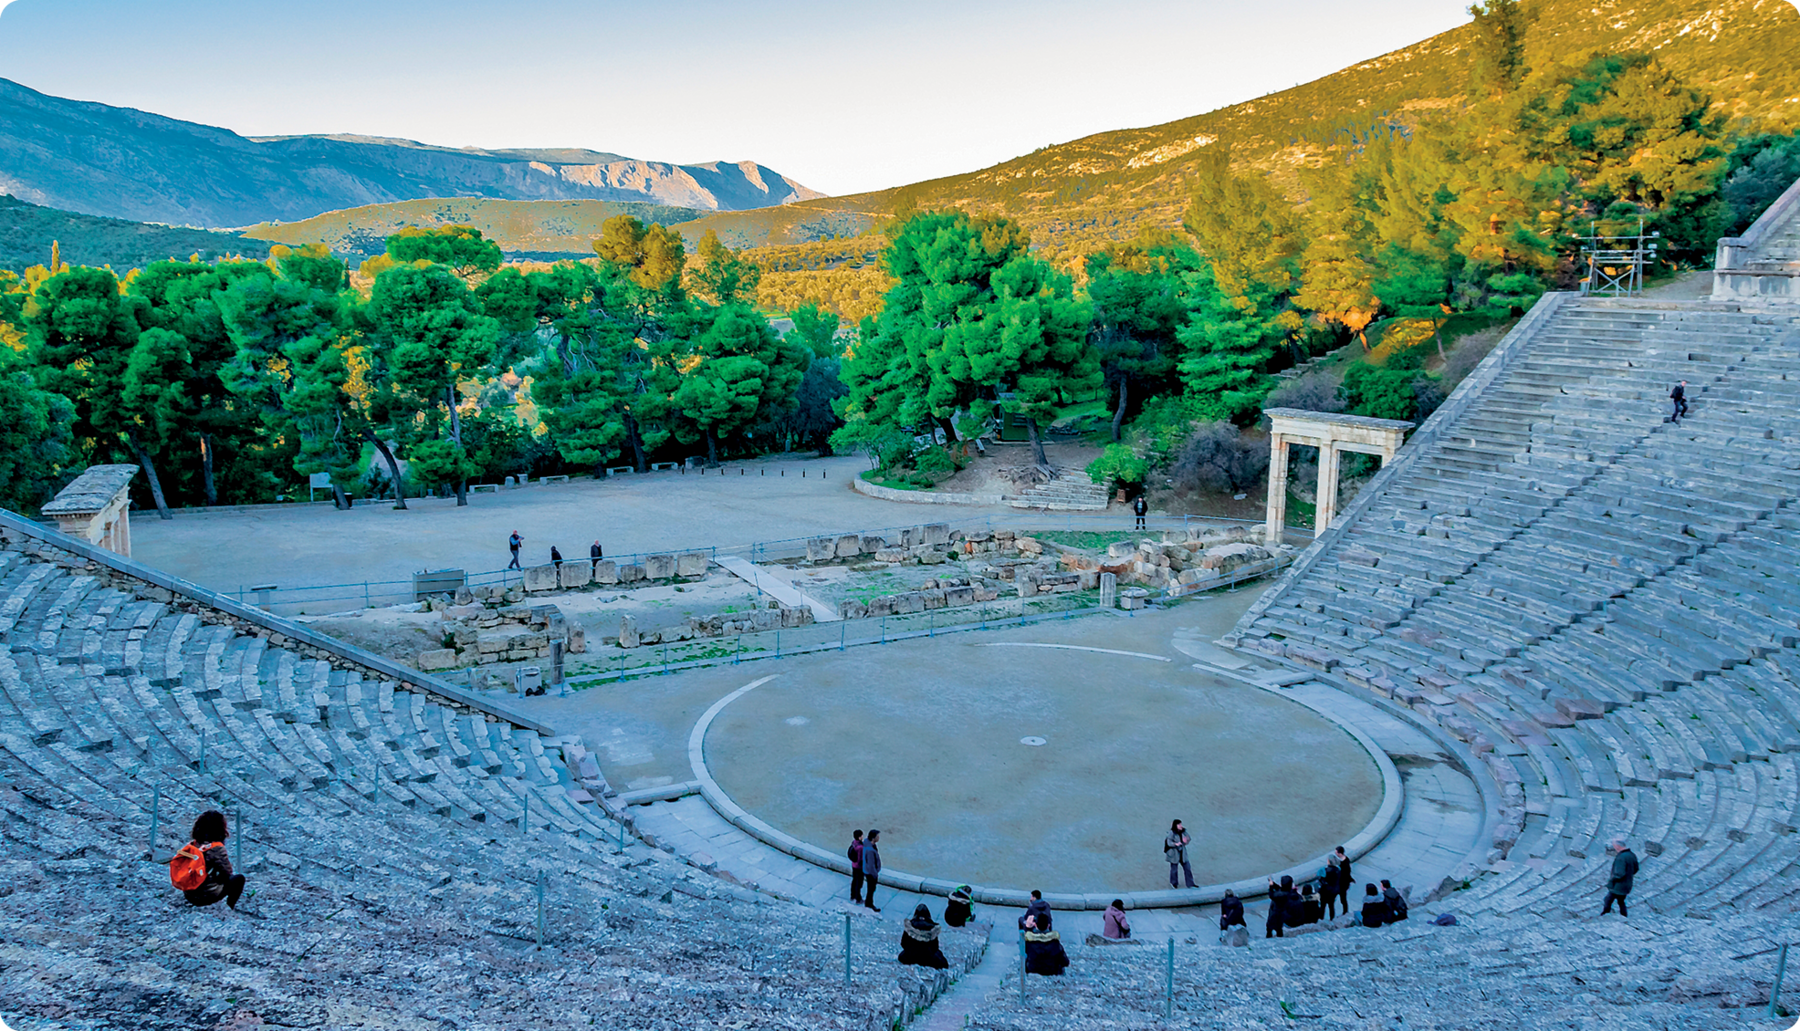 Fotografia. Ruína de um teatro grego. Construção de pedra, sem cobertura e em formato semicircular com vários andares de assento. No centro, um círculo.